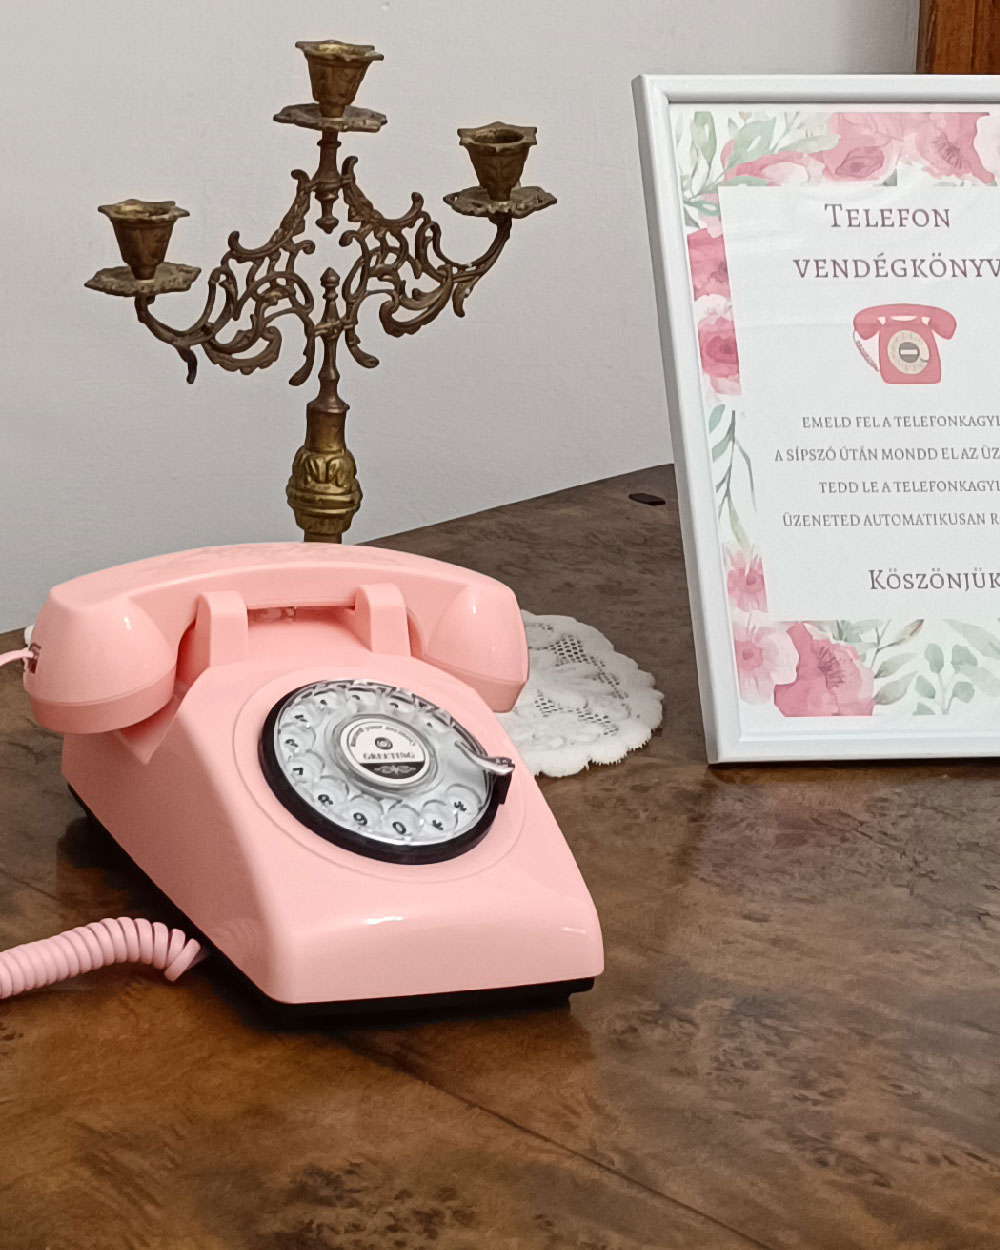 Telefonos vendégkönyv esküvőre rózsaszín színben